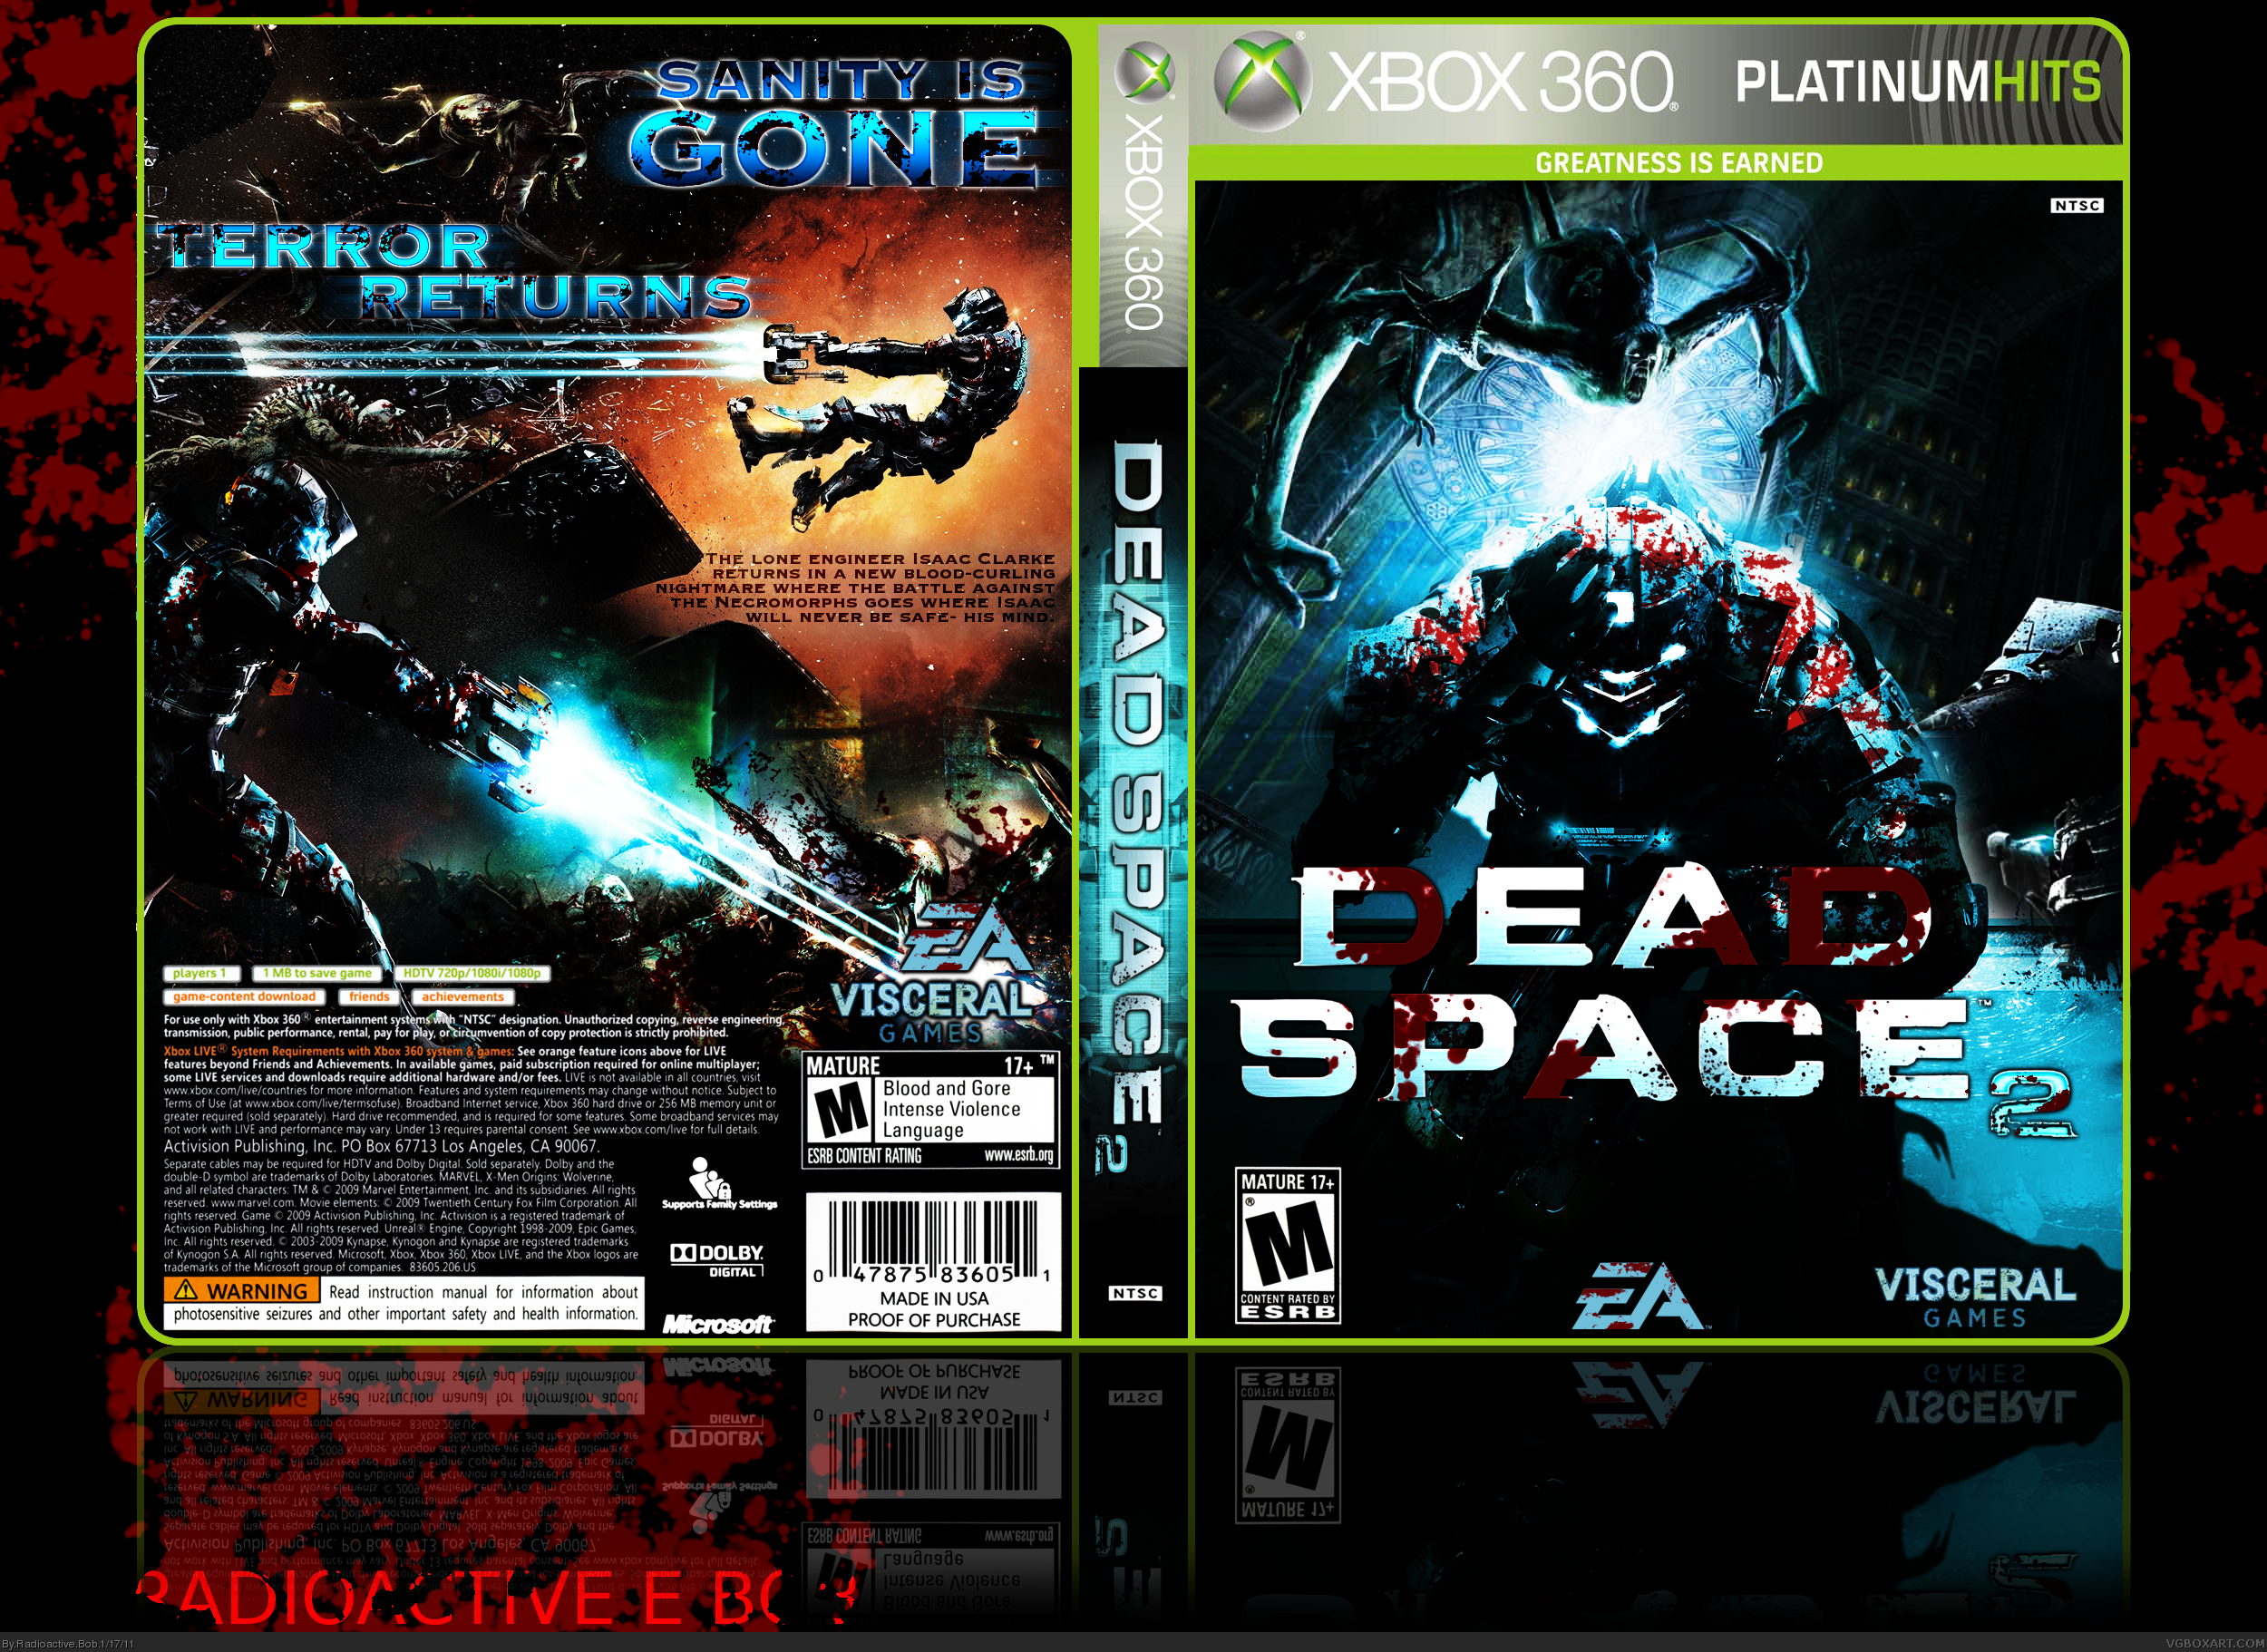 Dead Space 2 box cover